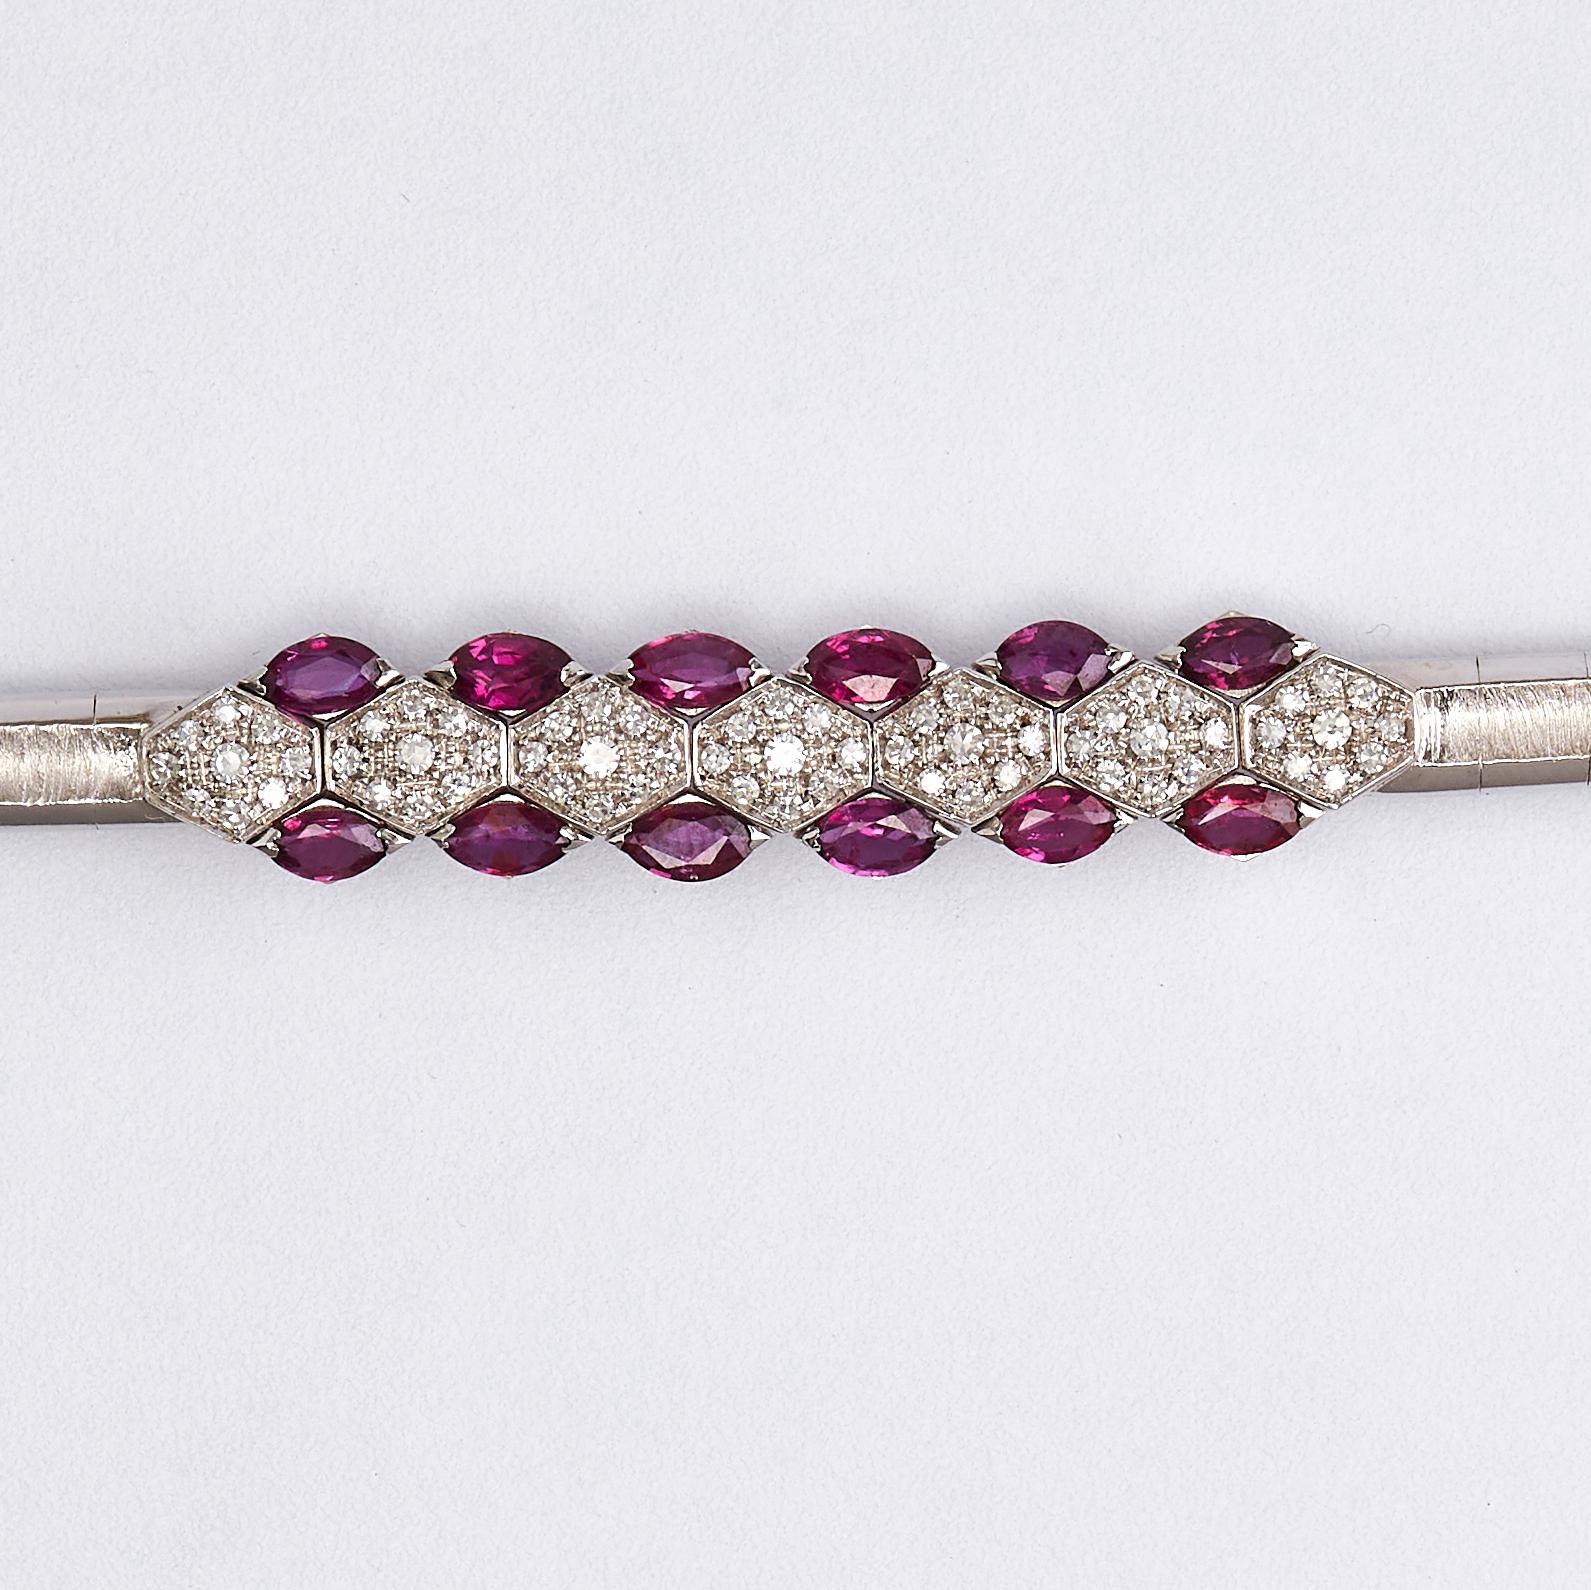 bracelet en or blanc 18K avec rubis et diamants 

Superbe bracelet moderne en rubis et diamants.
Sertie de diamants de qualité G VS1 de 2,75 ct et de 4,20 ct de rubis. 
Poids total : 23,25 grammes. Taille : 18 cm